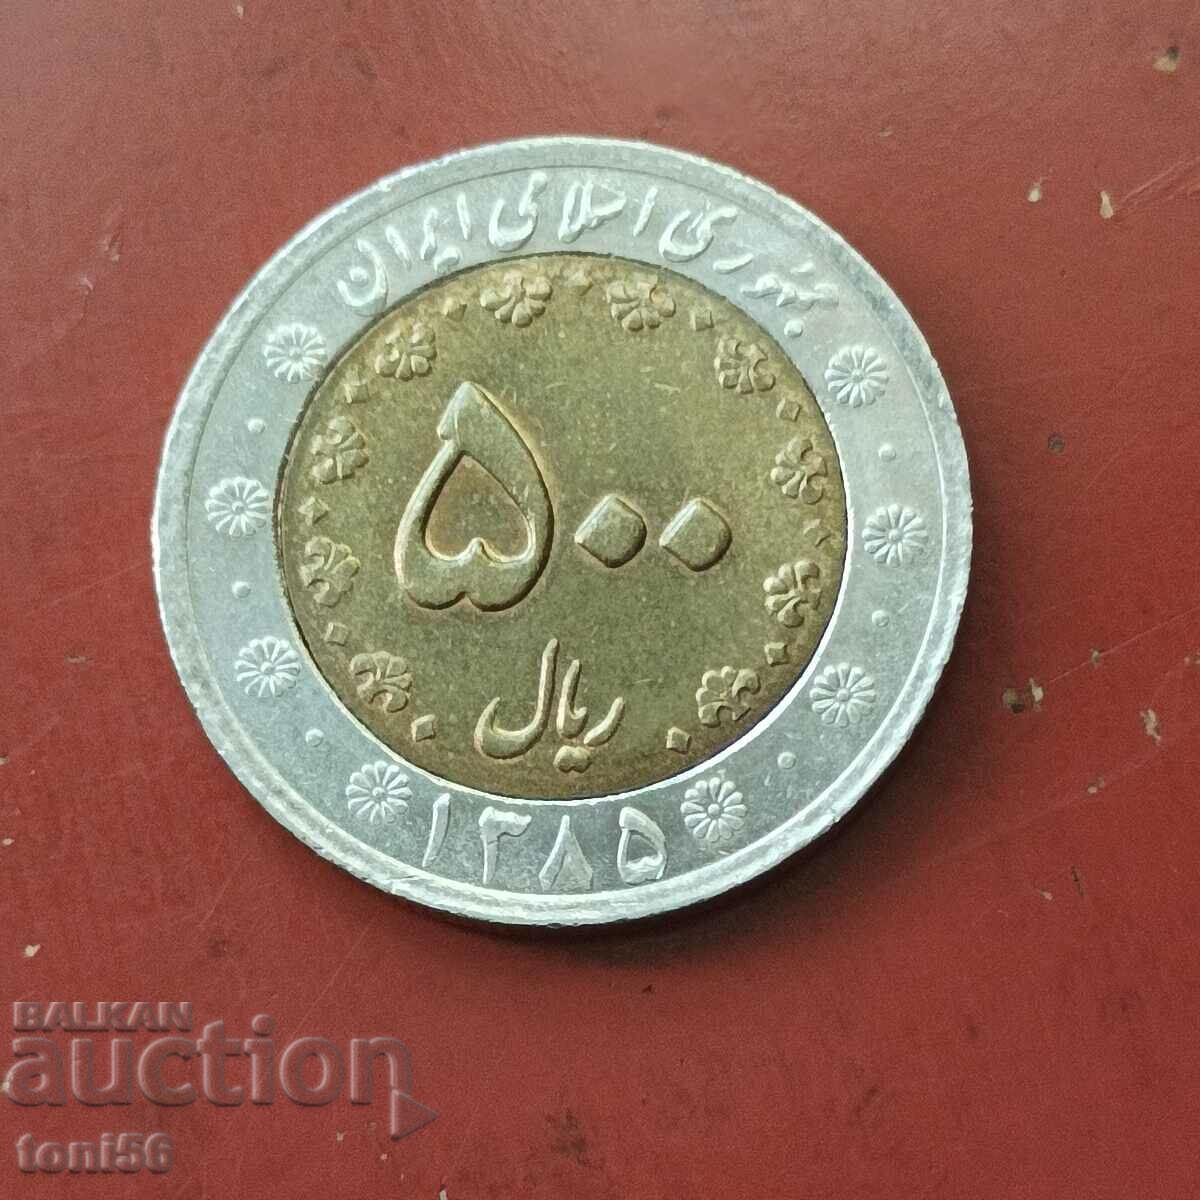 Iran 500 de riali 2006, aUNC